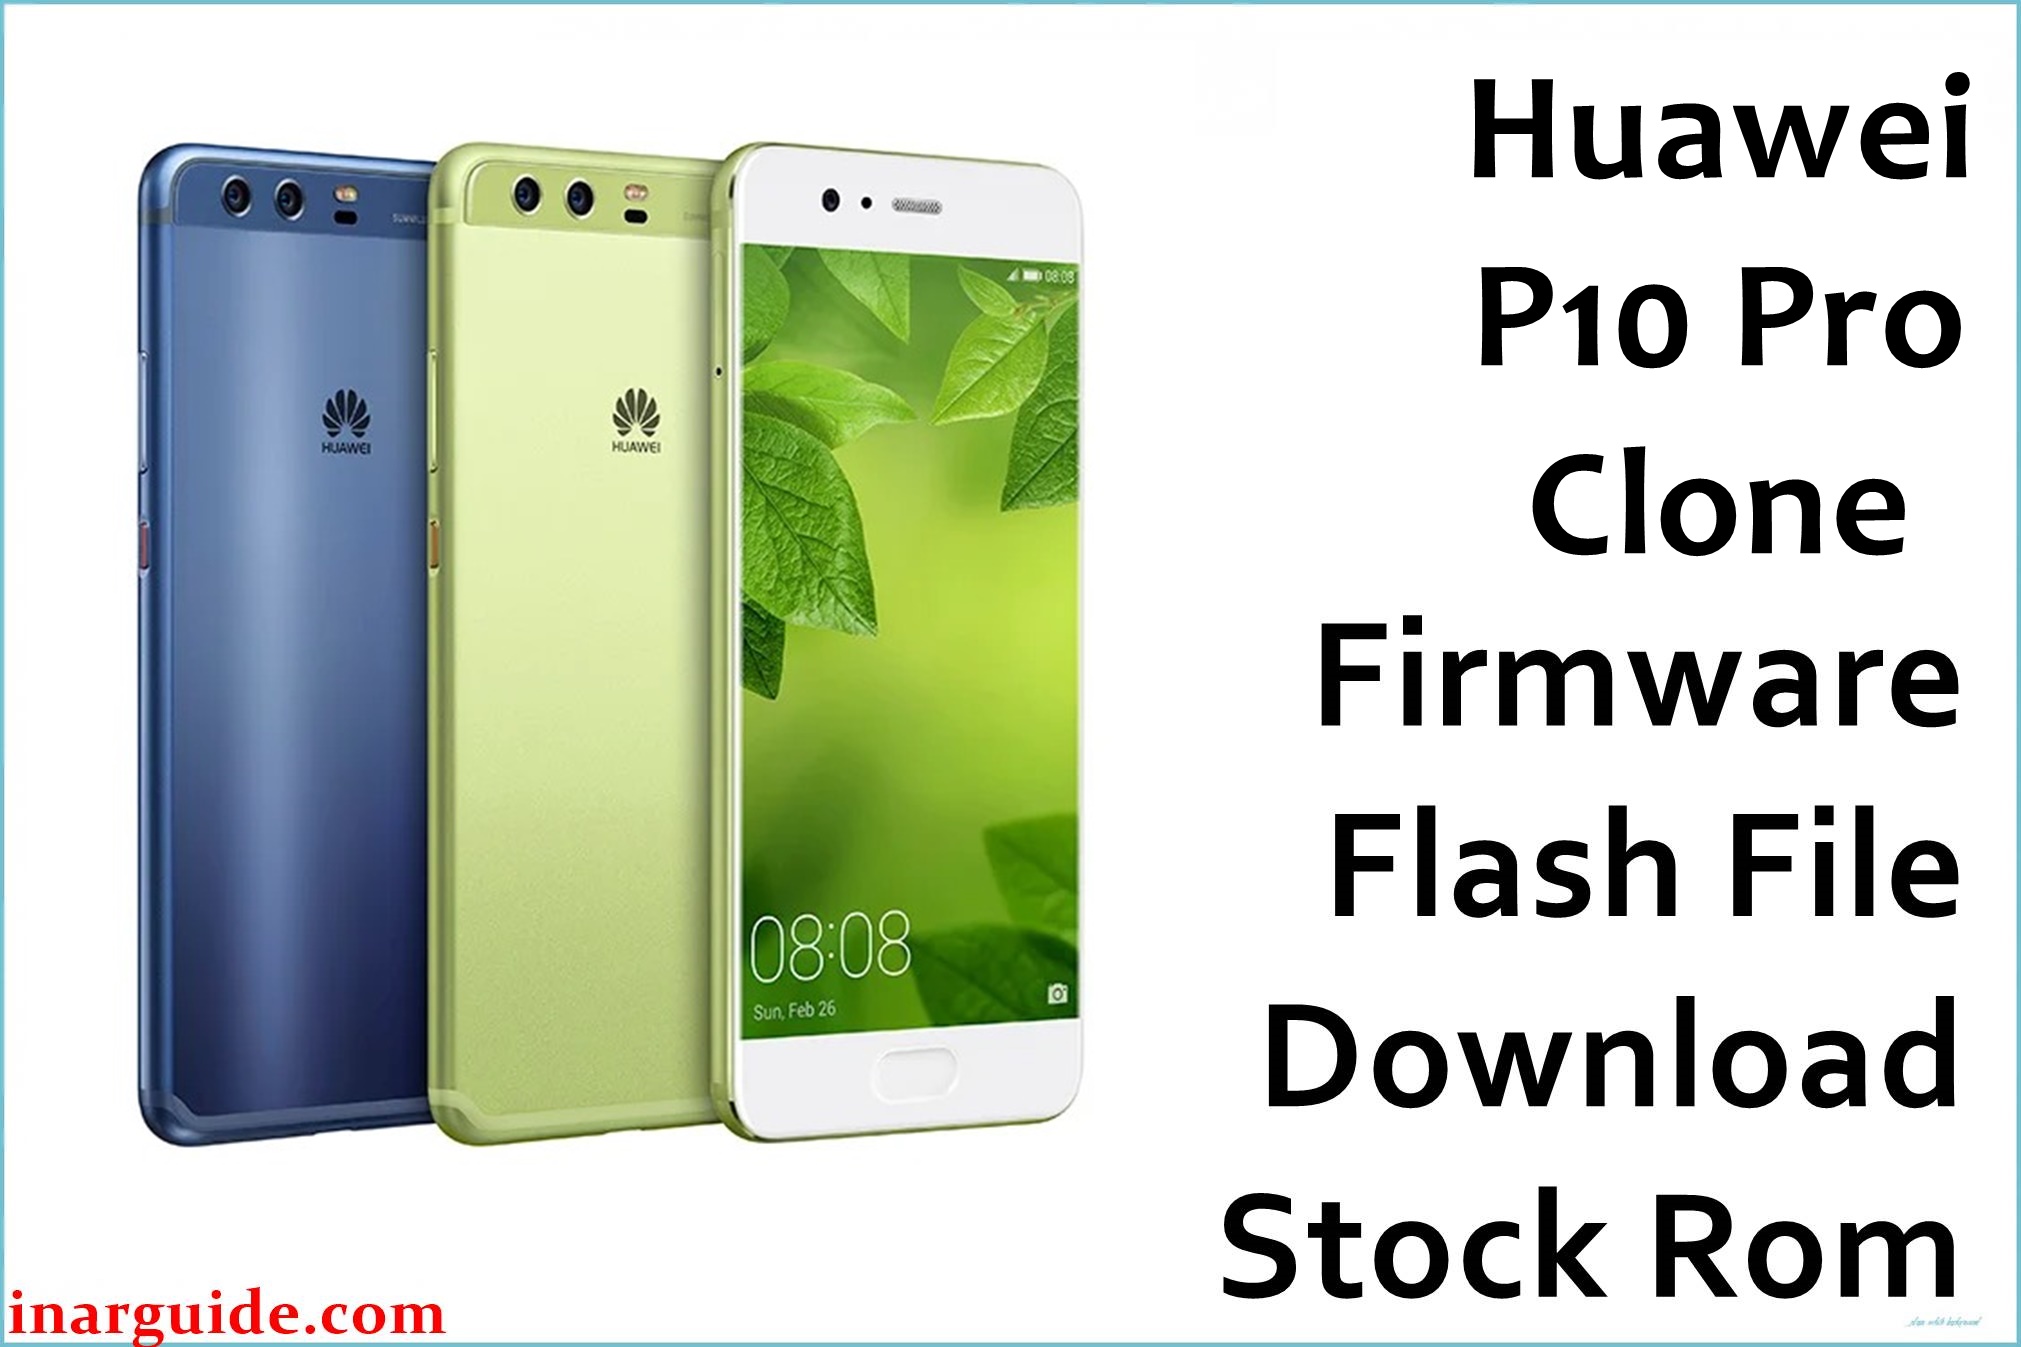 Huawei P10 Pro Clone